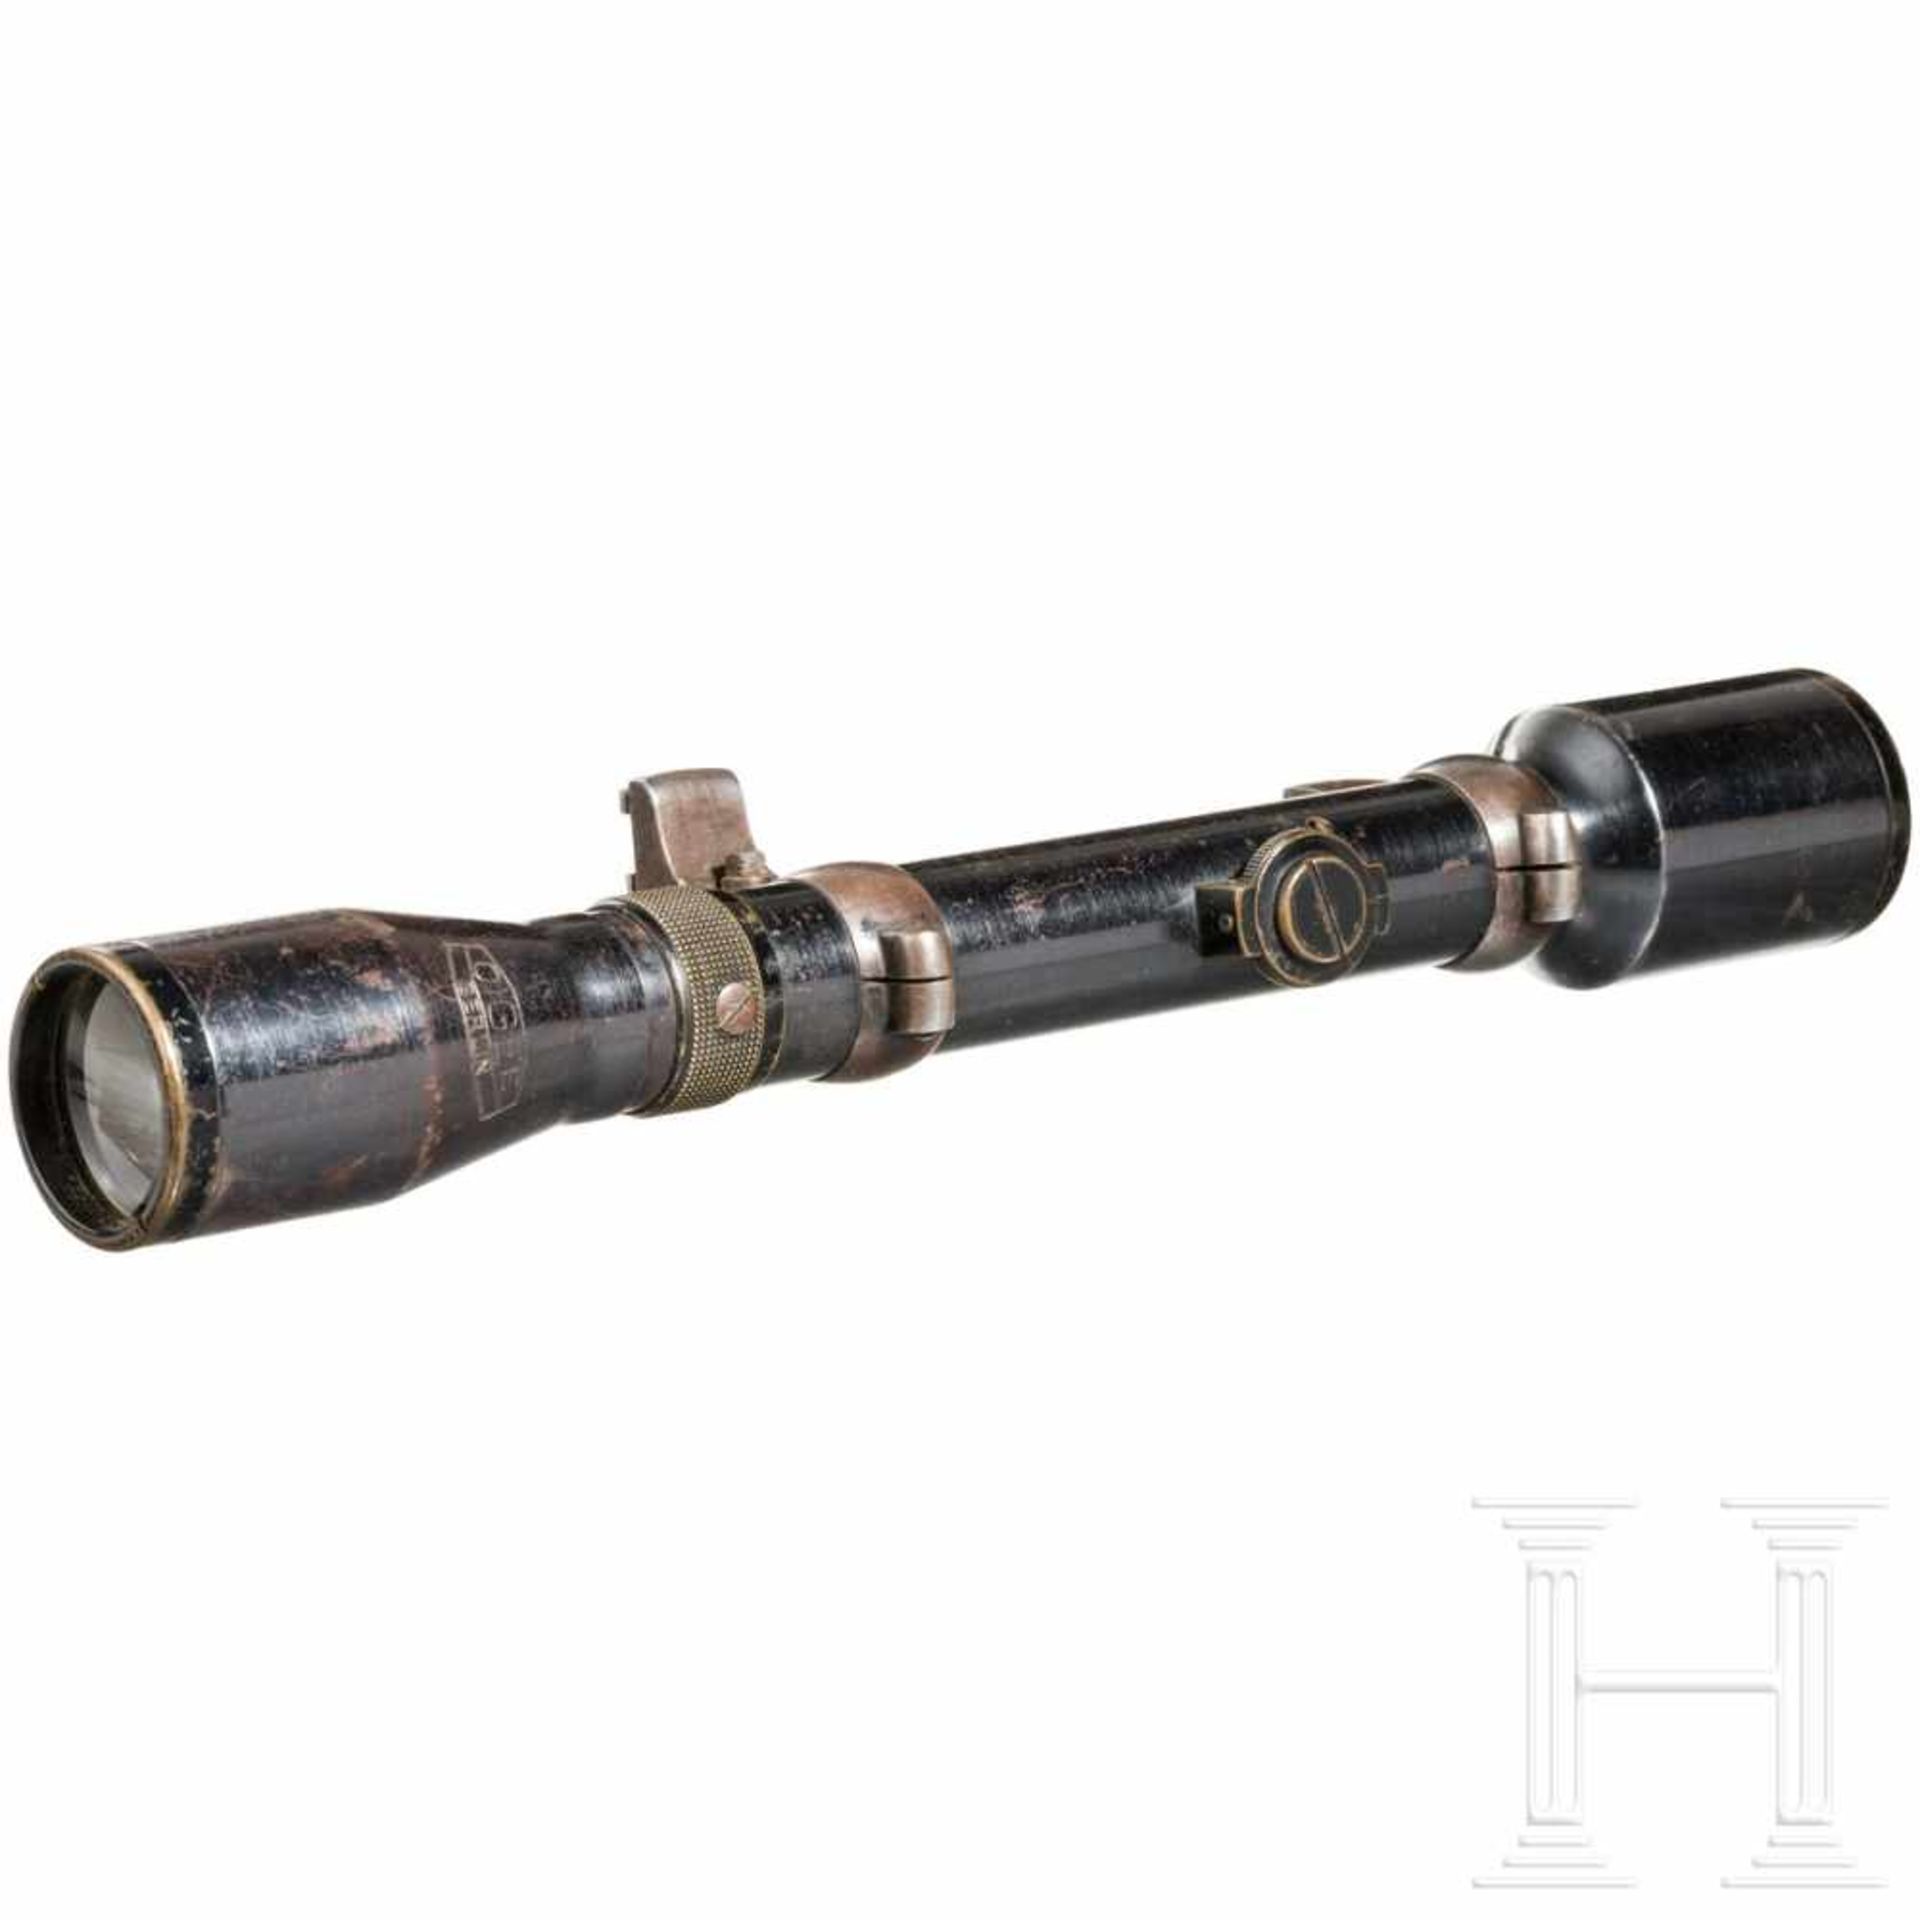 Rifle scope OIGEE Luxor hell 4 x with quiverStahl, brüniert (berieben), Herstellerbezeichnung, - Bild 6 aus 8